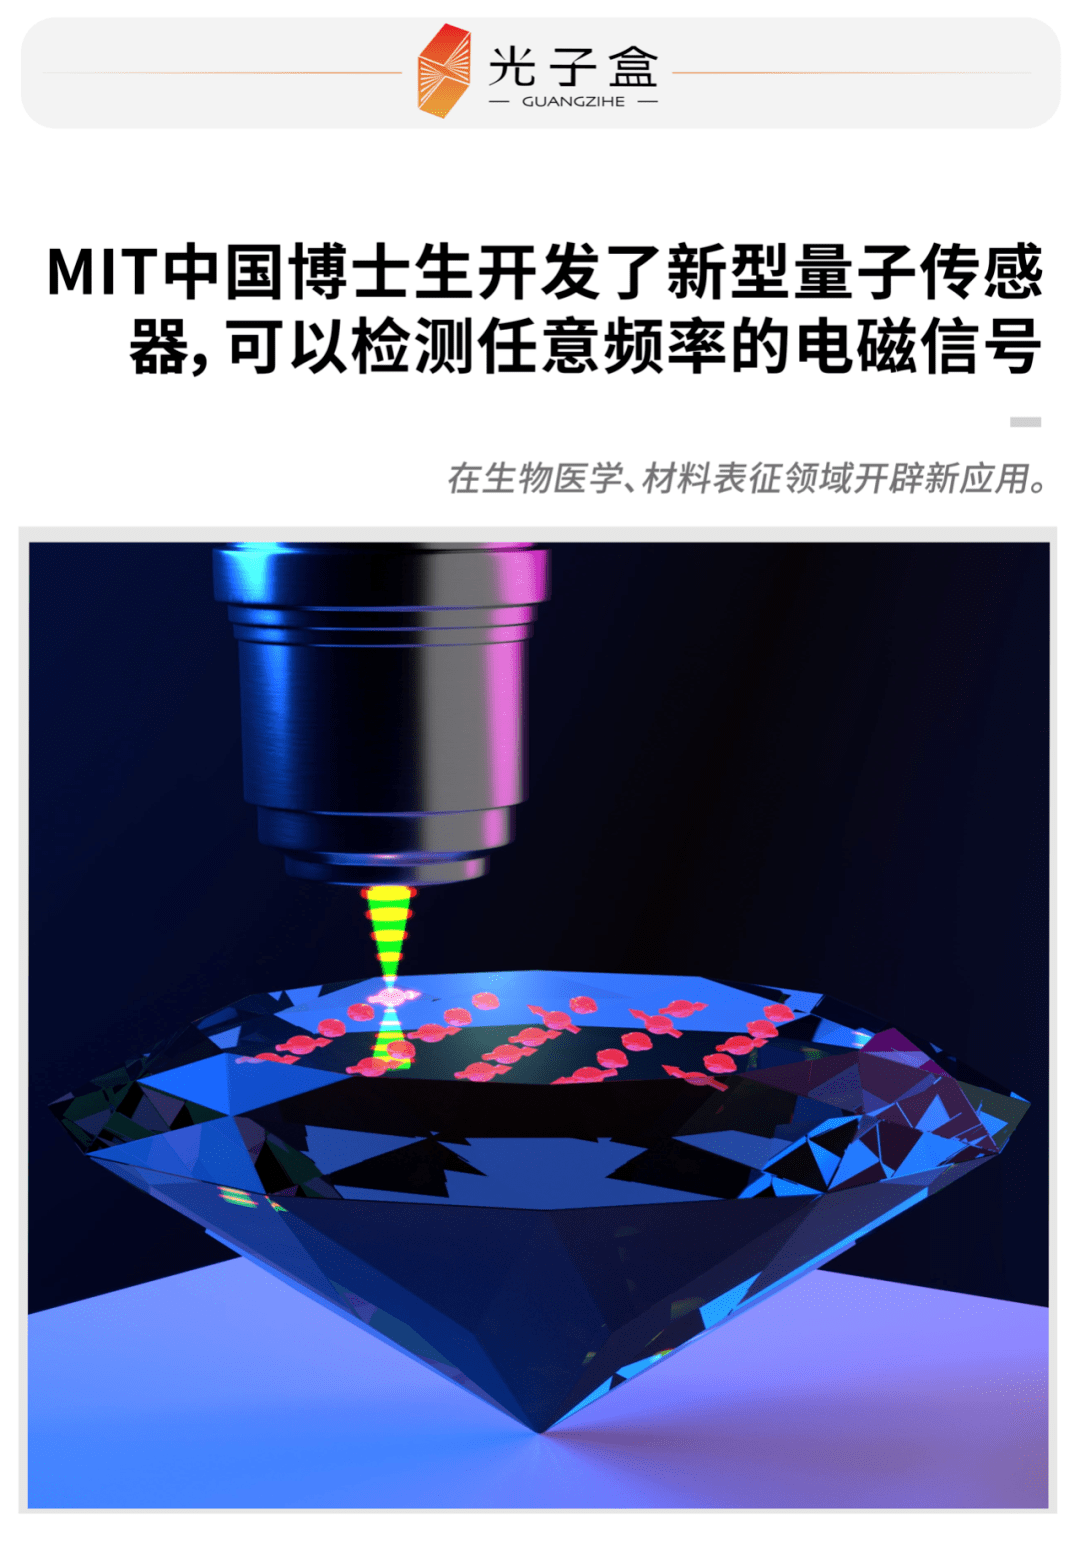 mit中国博士生开发了新型量子传感器可检测任意频率的电磁信号